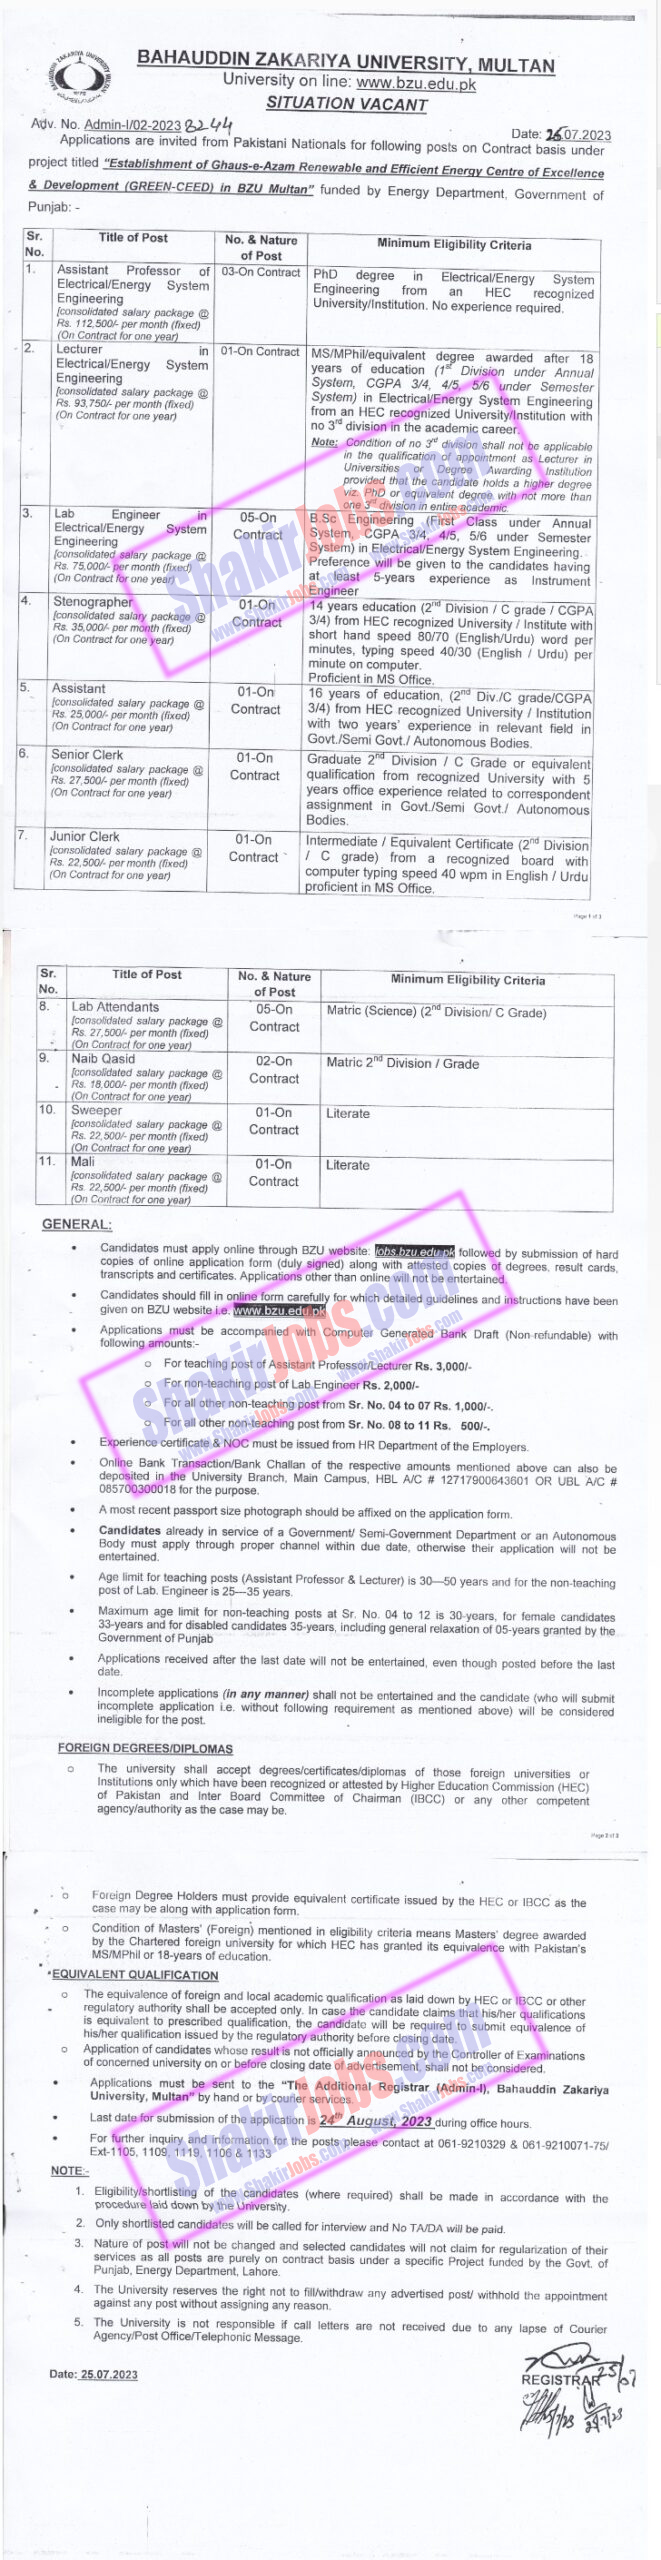 BZU Multan Jobs August 2023 Ad 1